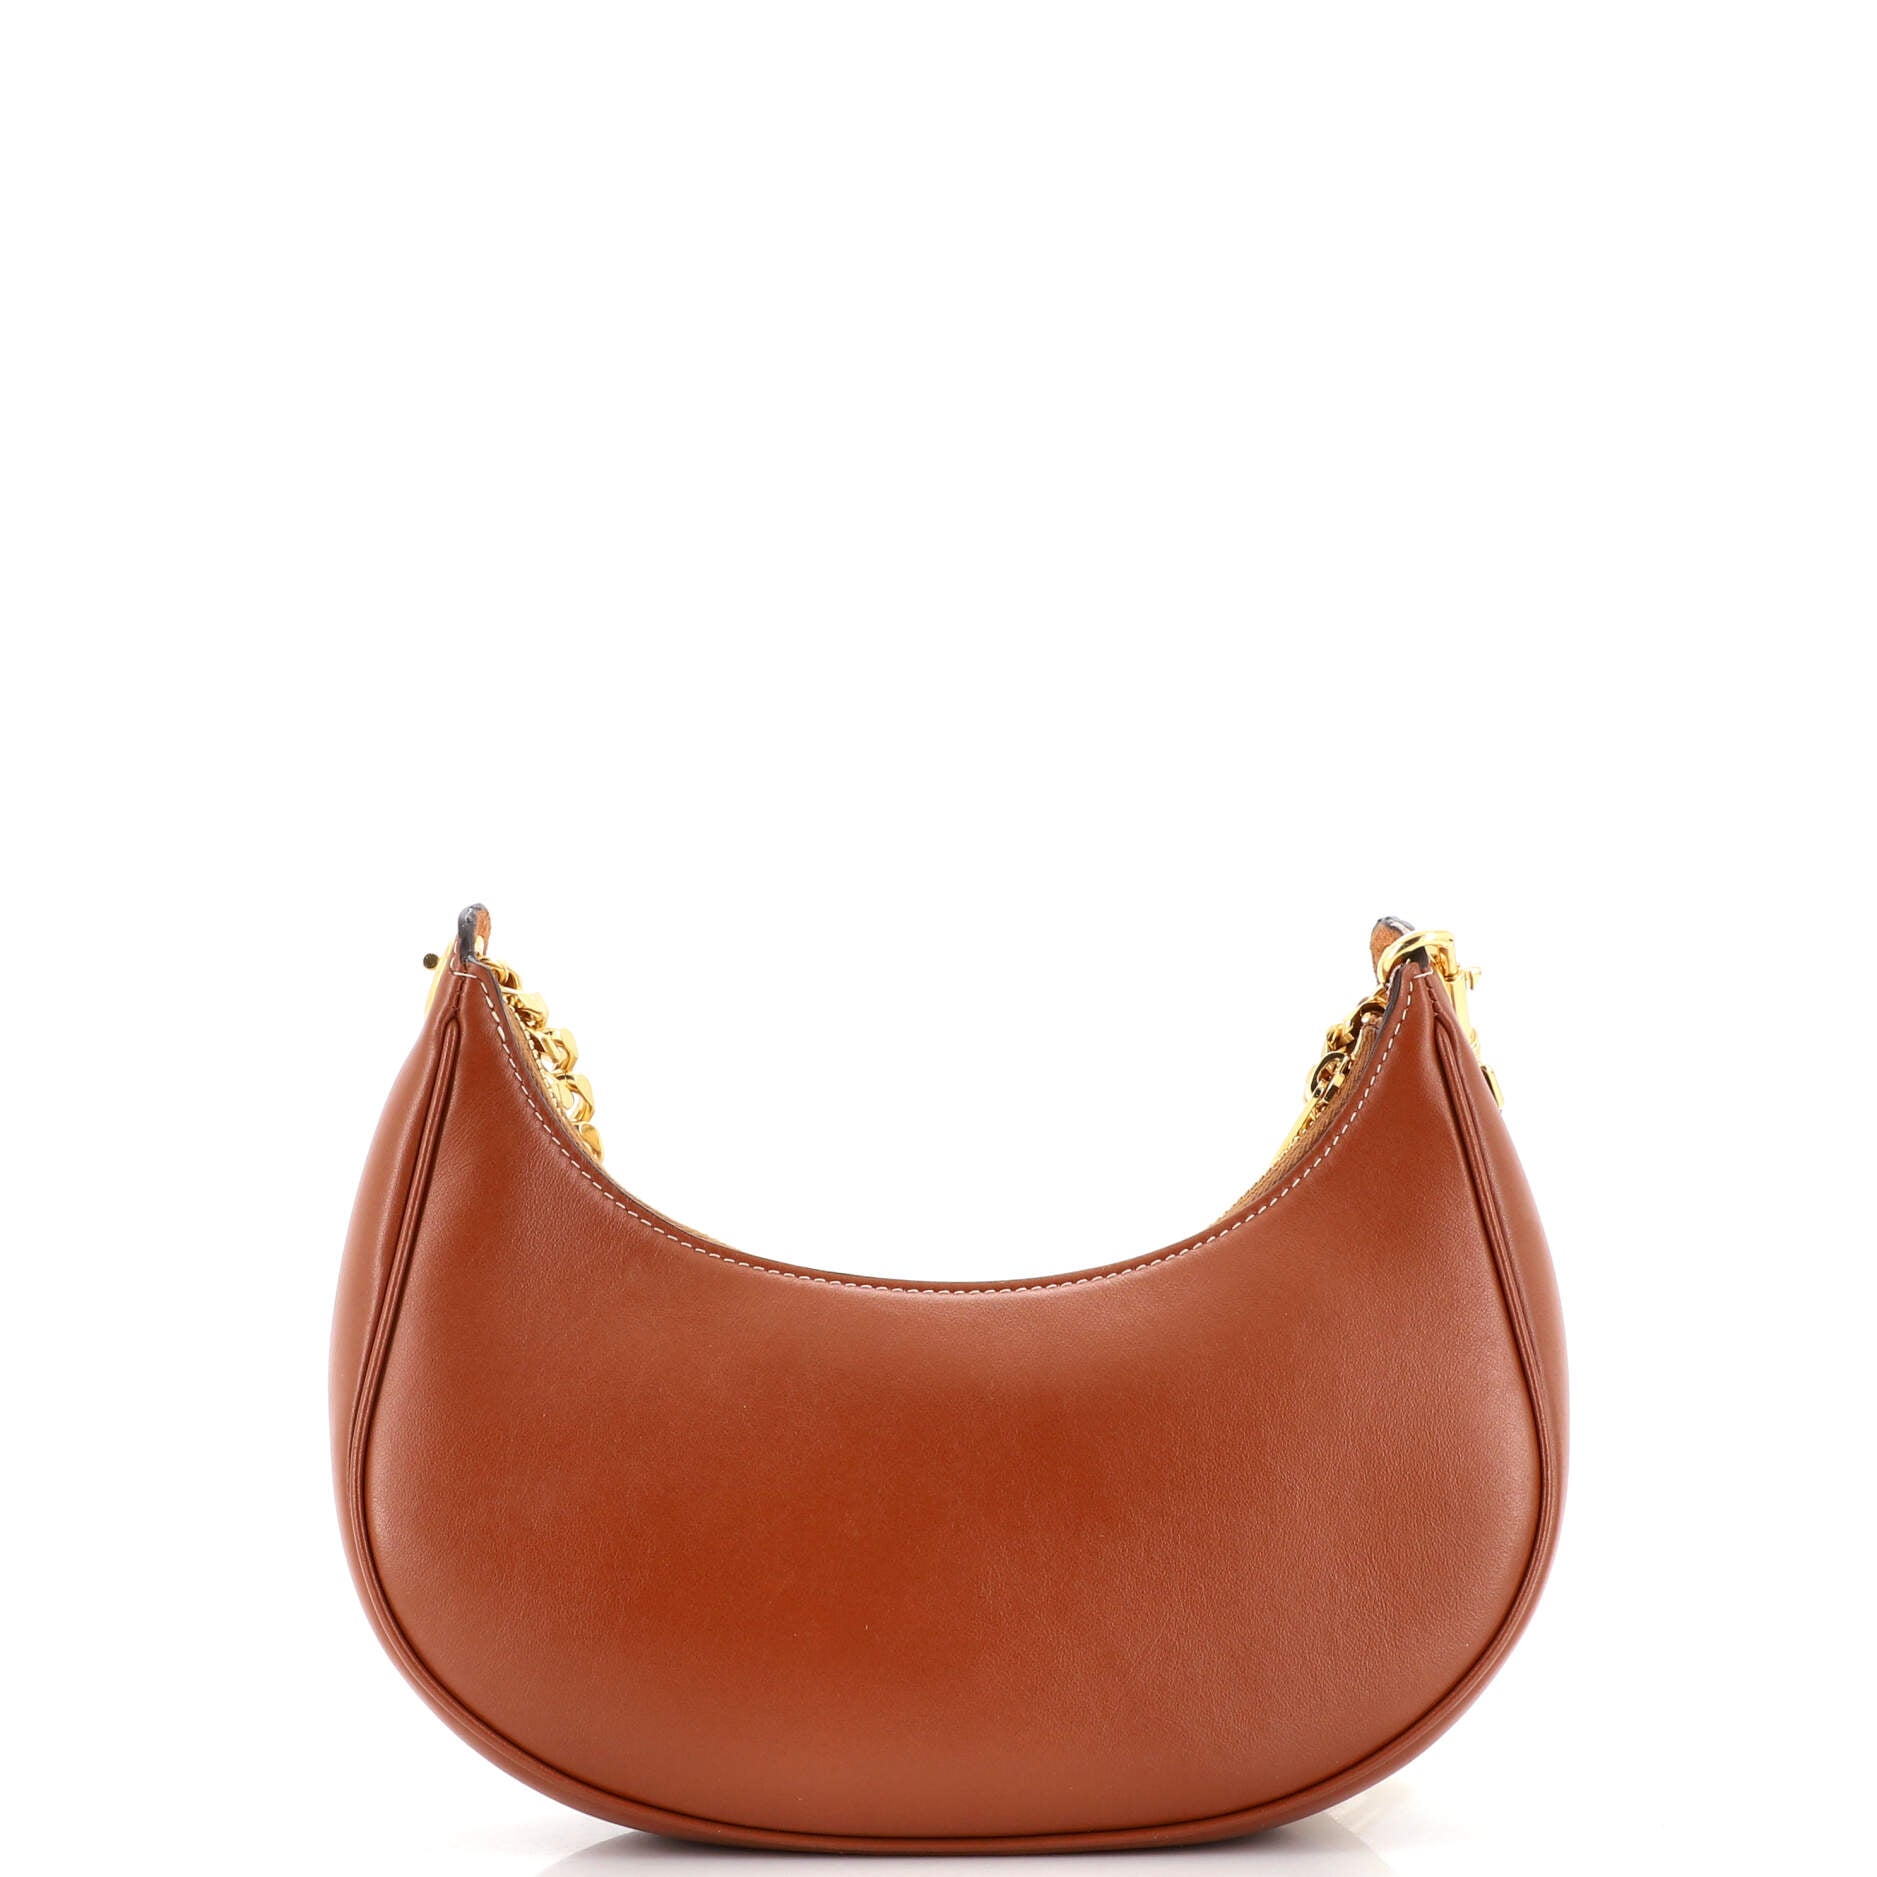 Medium Ava satchel